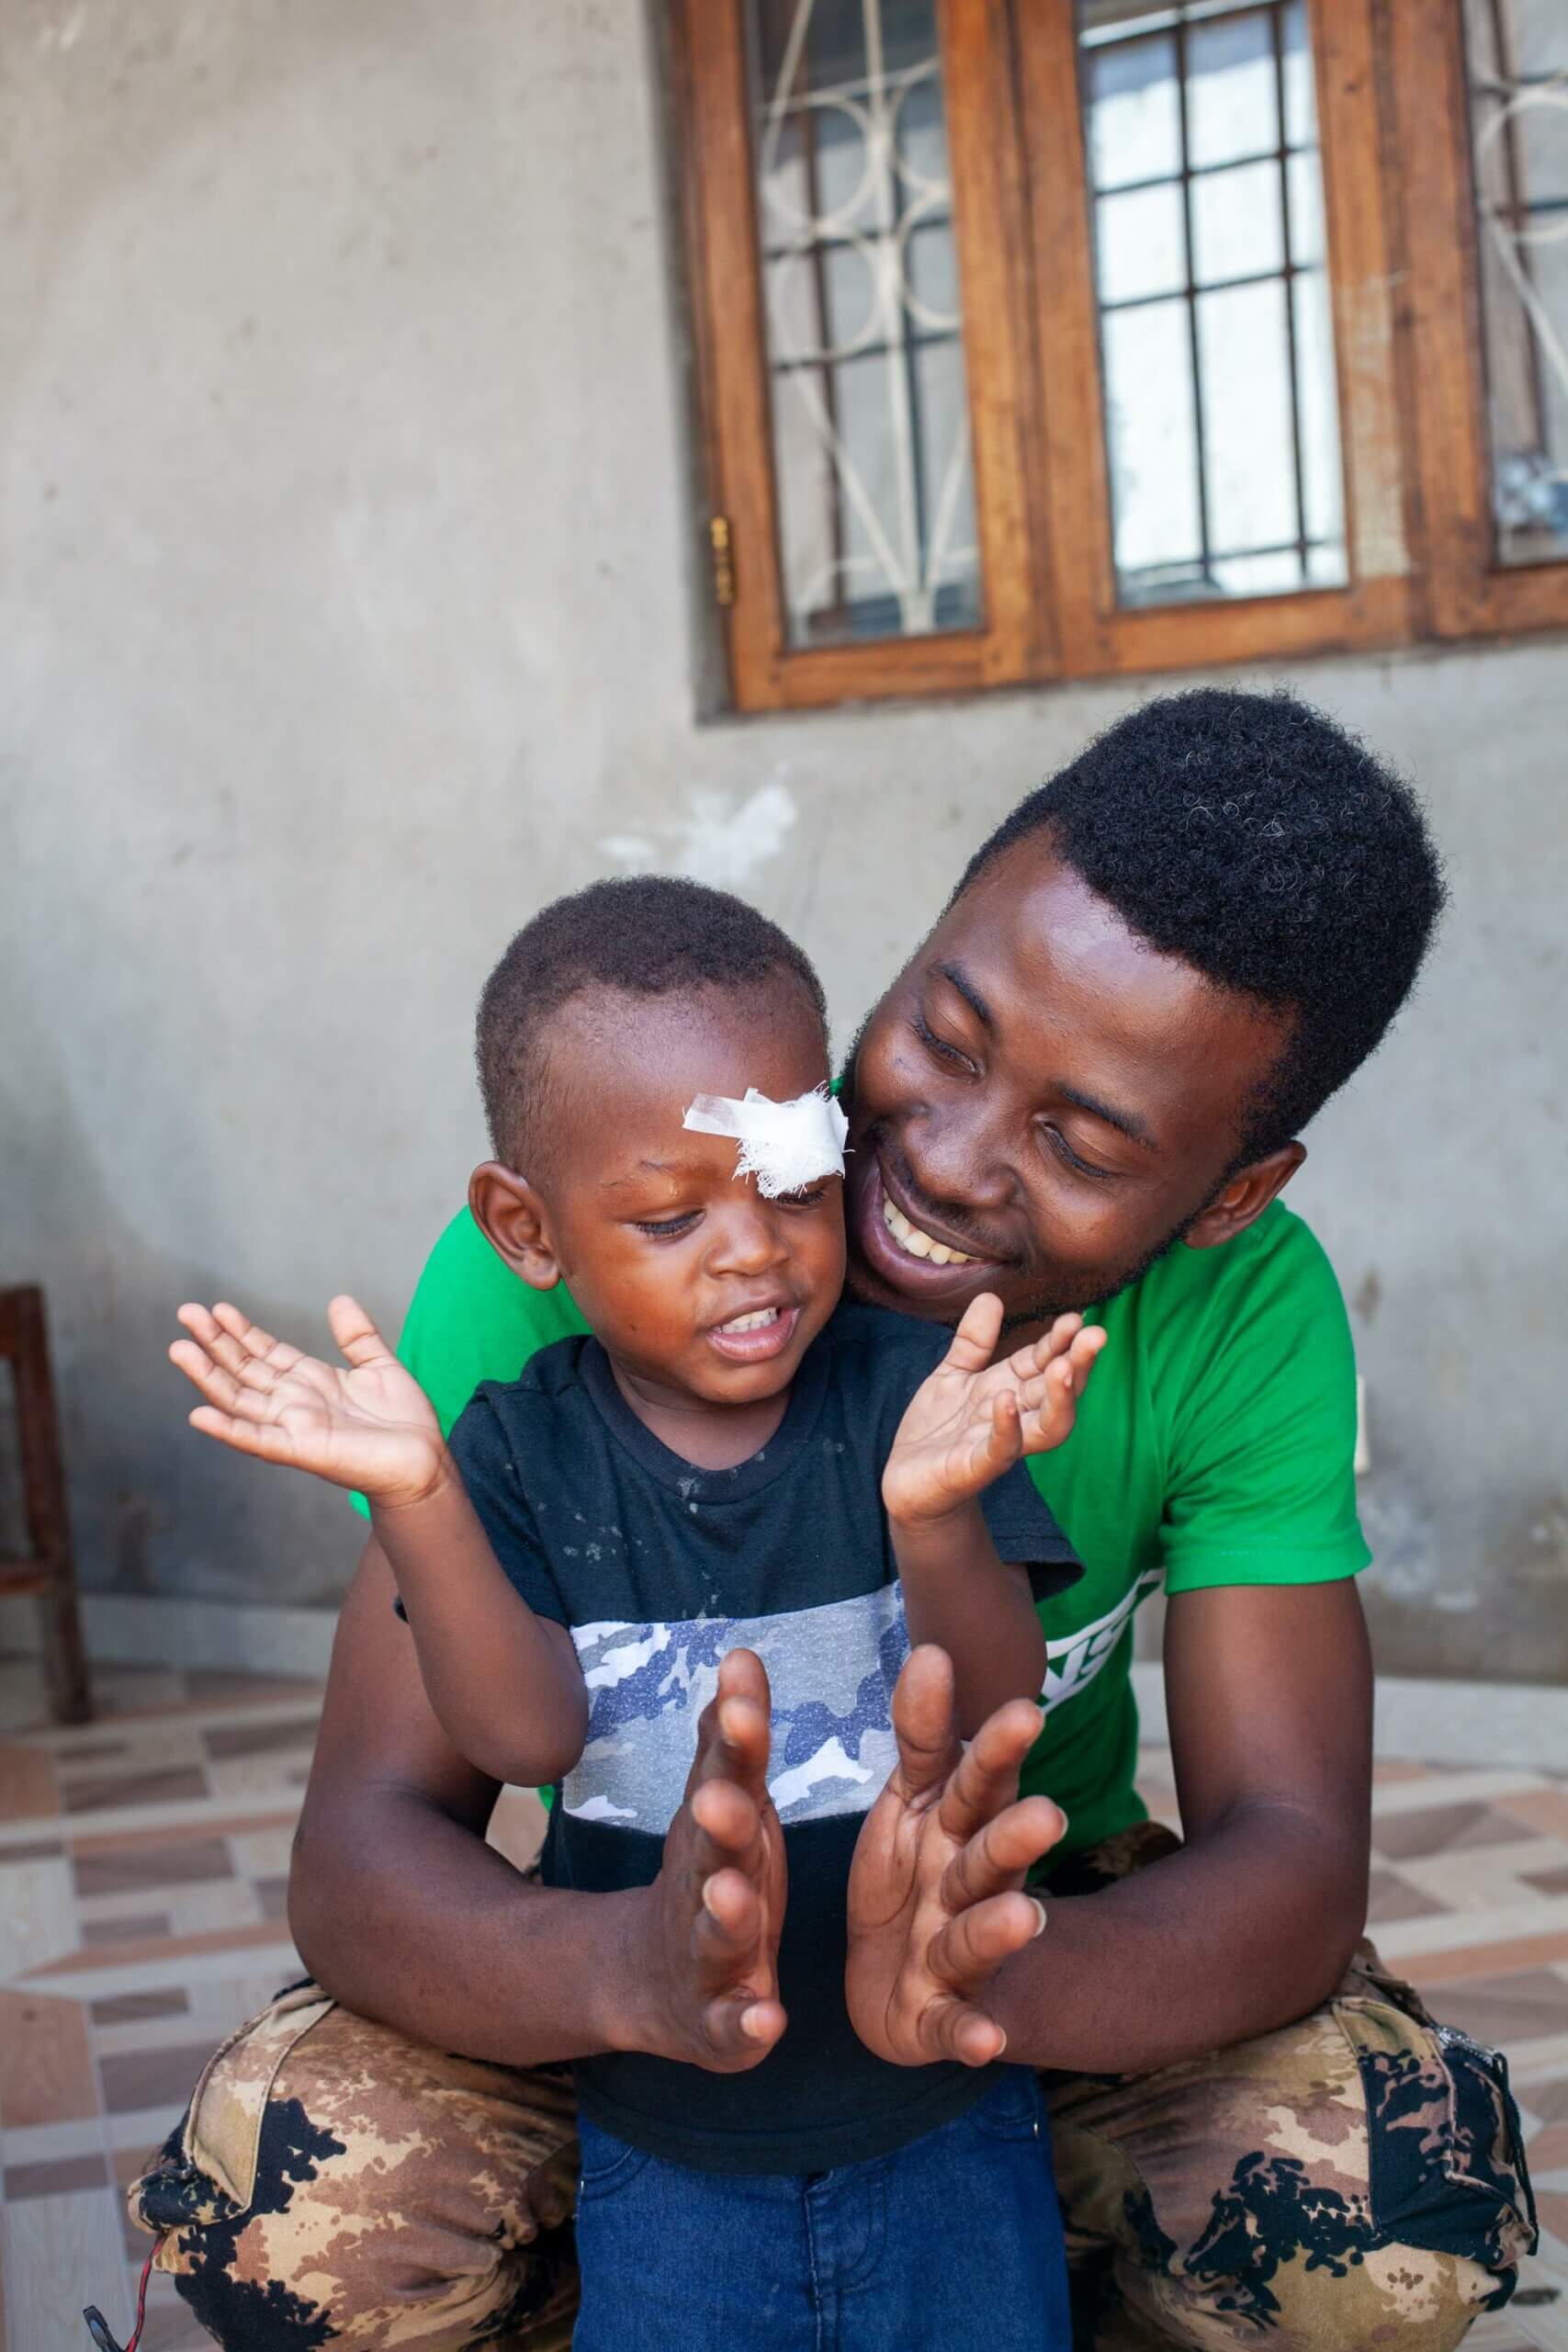 Ainyr aus Mosambik litt an grauem Star. Er konnte erfolgreich operiert werden, ohne die Unterstützung von Light for the World wäre das nicht möglich gewesen, seine Familie hätte nicht das nötige Geld dafür gehabt.